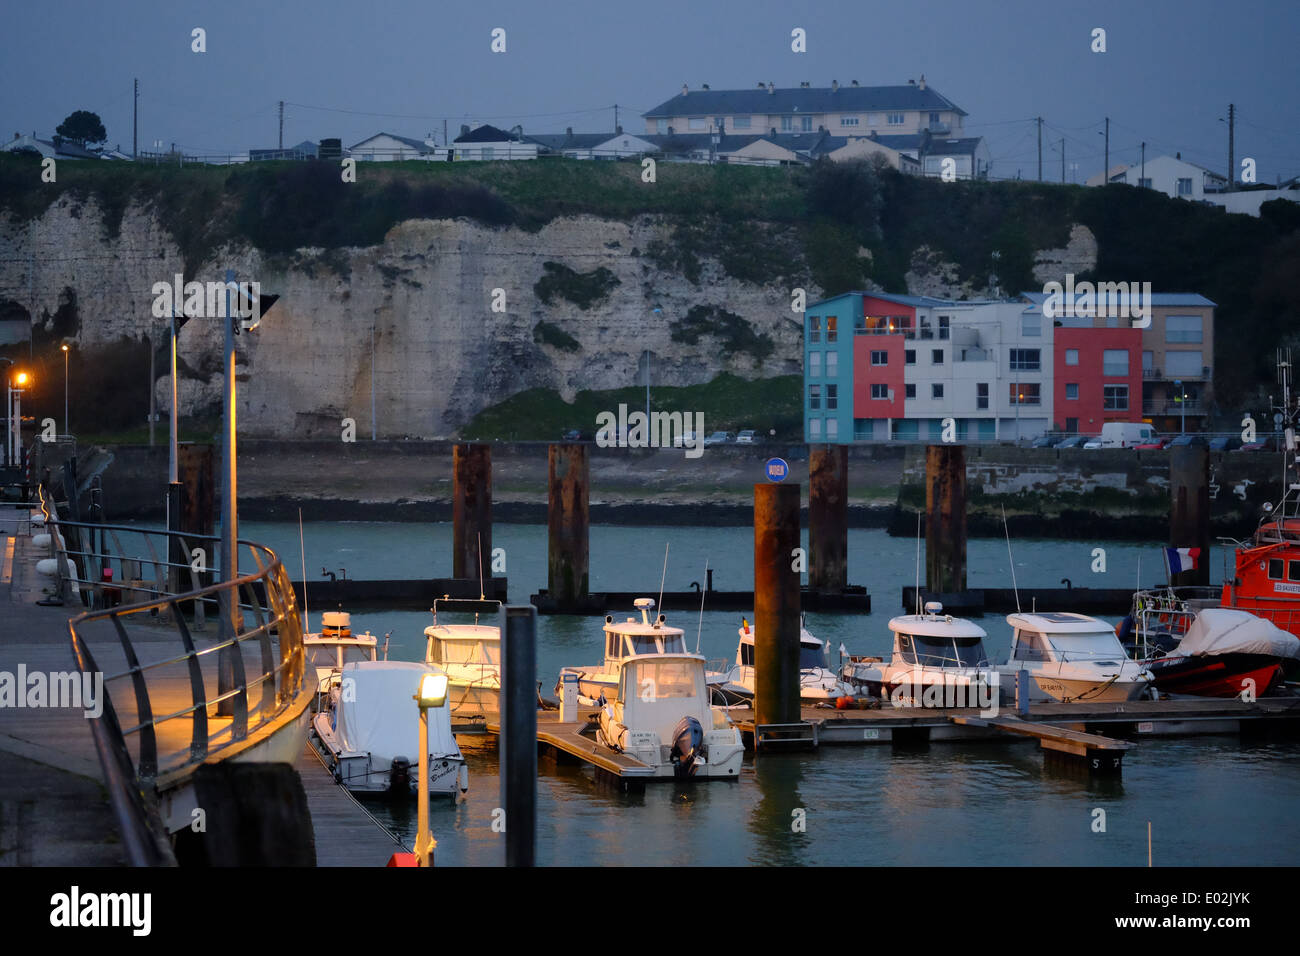 Dieppe, Normandie in Frankreich. Hafen am späten Abend Dämmerung stimmungsvolle Licht mit Booten Stockfoto